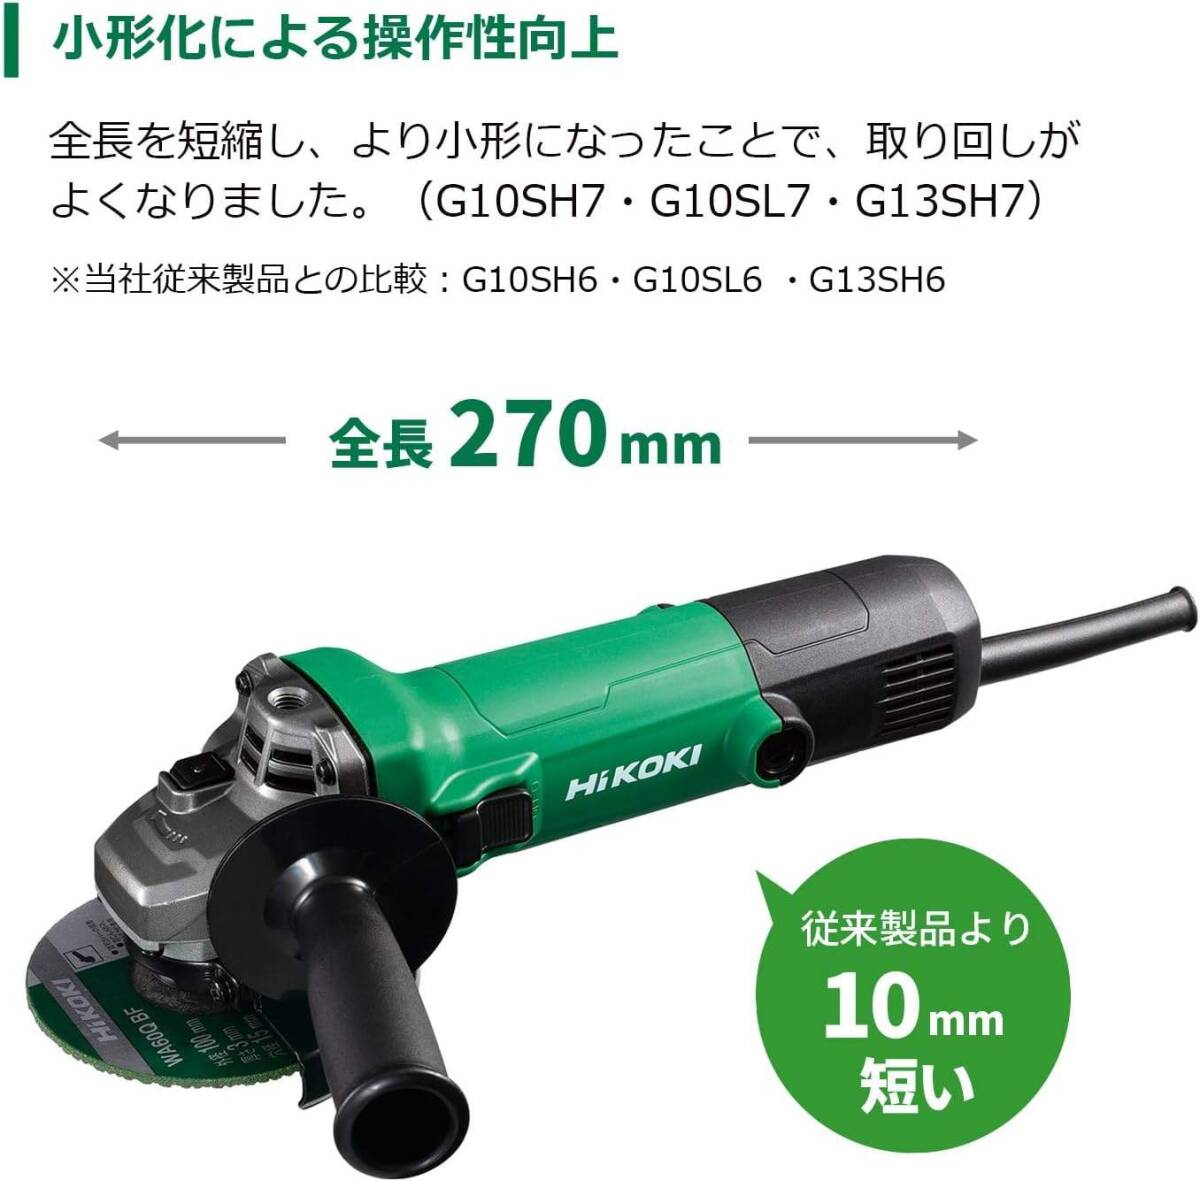 新品■HiKOKI(ハイコーキ) 125mm 電気ディスクグラインダー AC100V スライドスイッチタイプ ブレーキ付 G13SH7_画像2